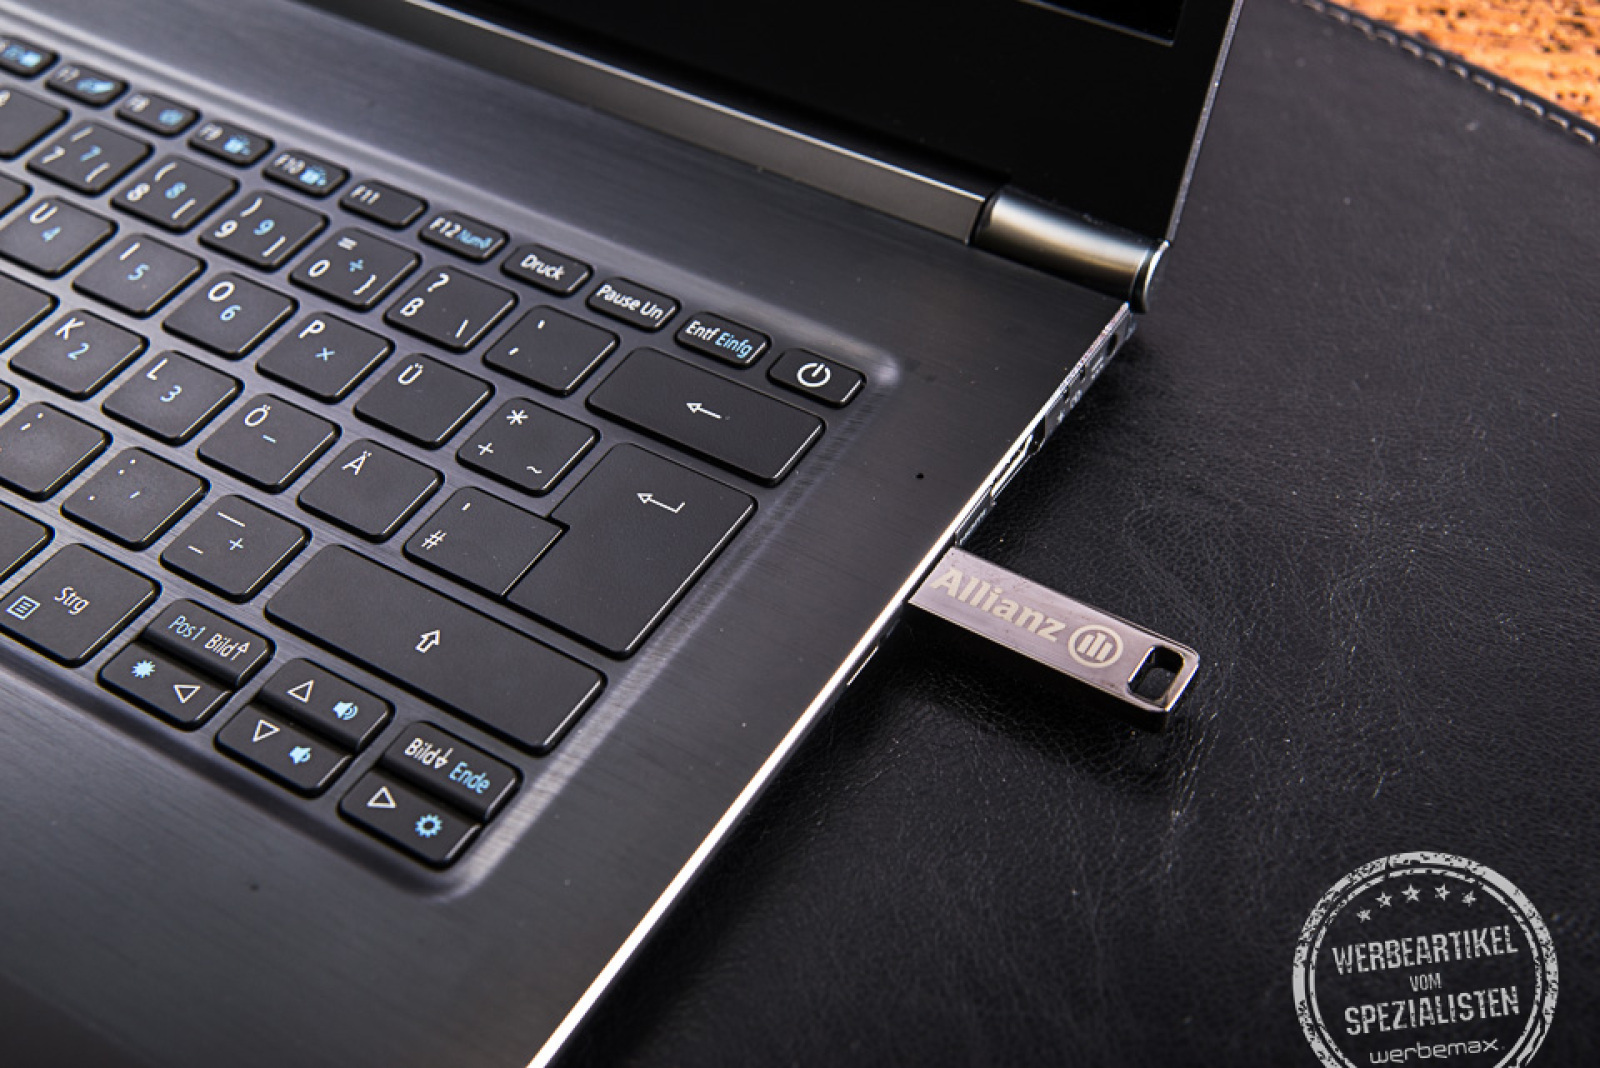 USB Stick Element am Laptop eingesteckt als Mitarbeitergeschenk.